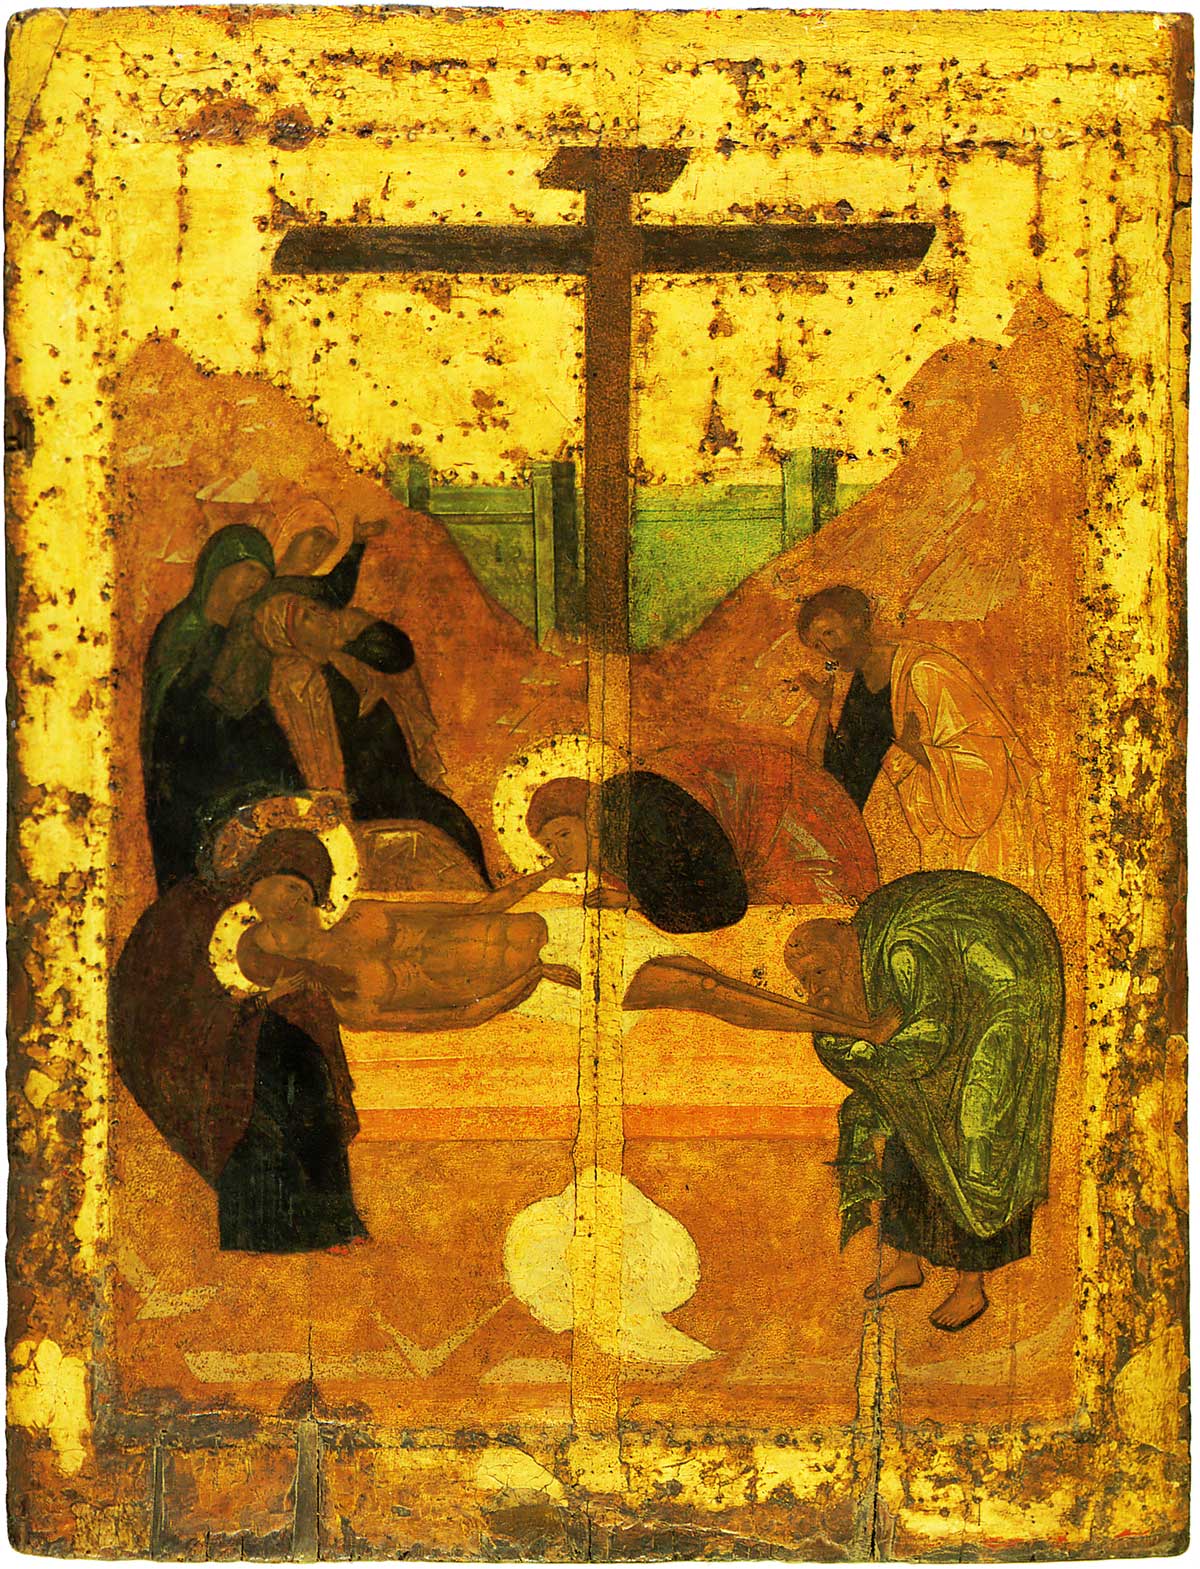 Andrej rubljov krisztus siratása 1425–1427. fa tempera 88 × 68 cm. szentháromság szergij kolostor szergijev poszad